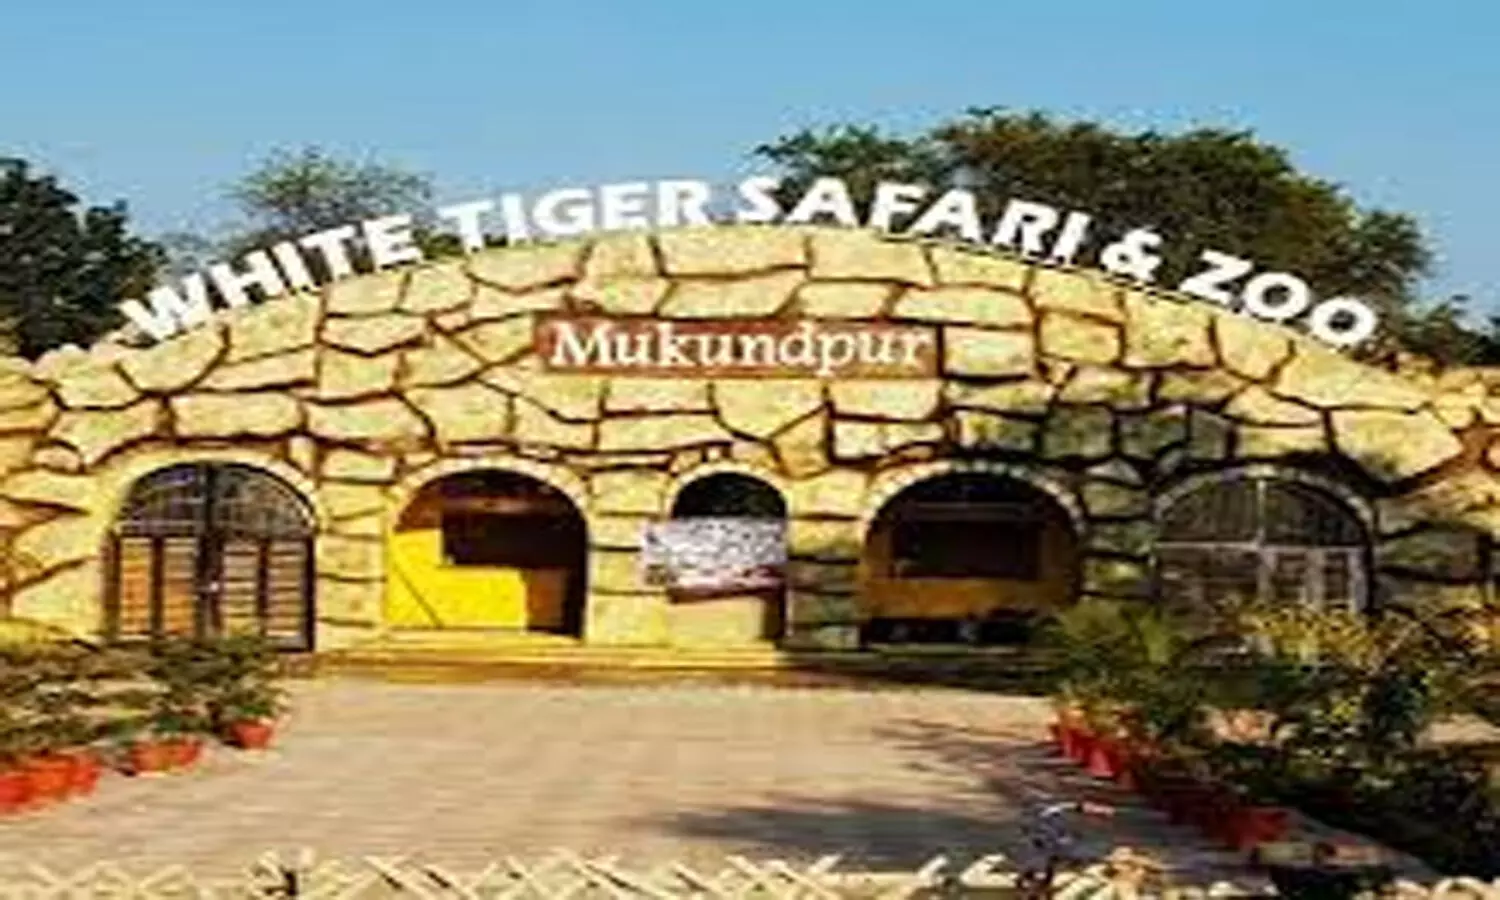 Mukundpur Tiger Safari: रीवा के मुकुंदपुर व्हाइट टाइगर सफारी में आधा दर्जन बाड़े तैयार, यहां से आएंगे वन्य प्राणी